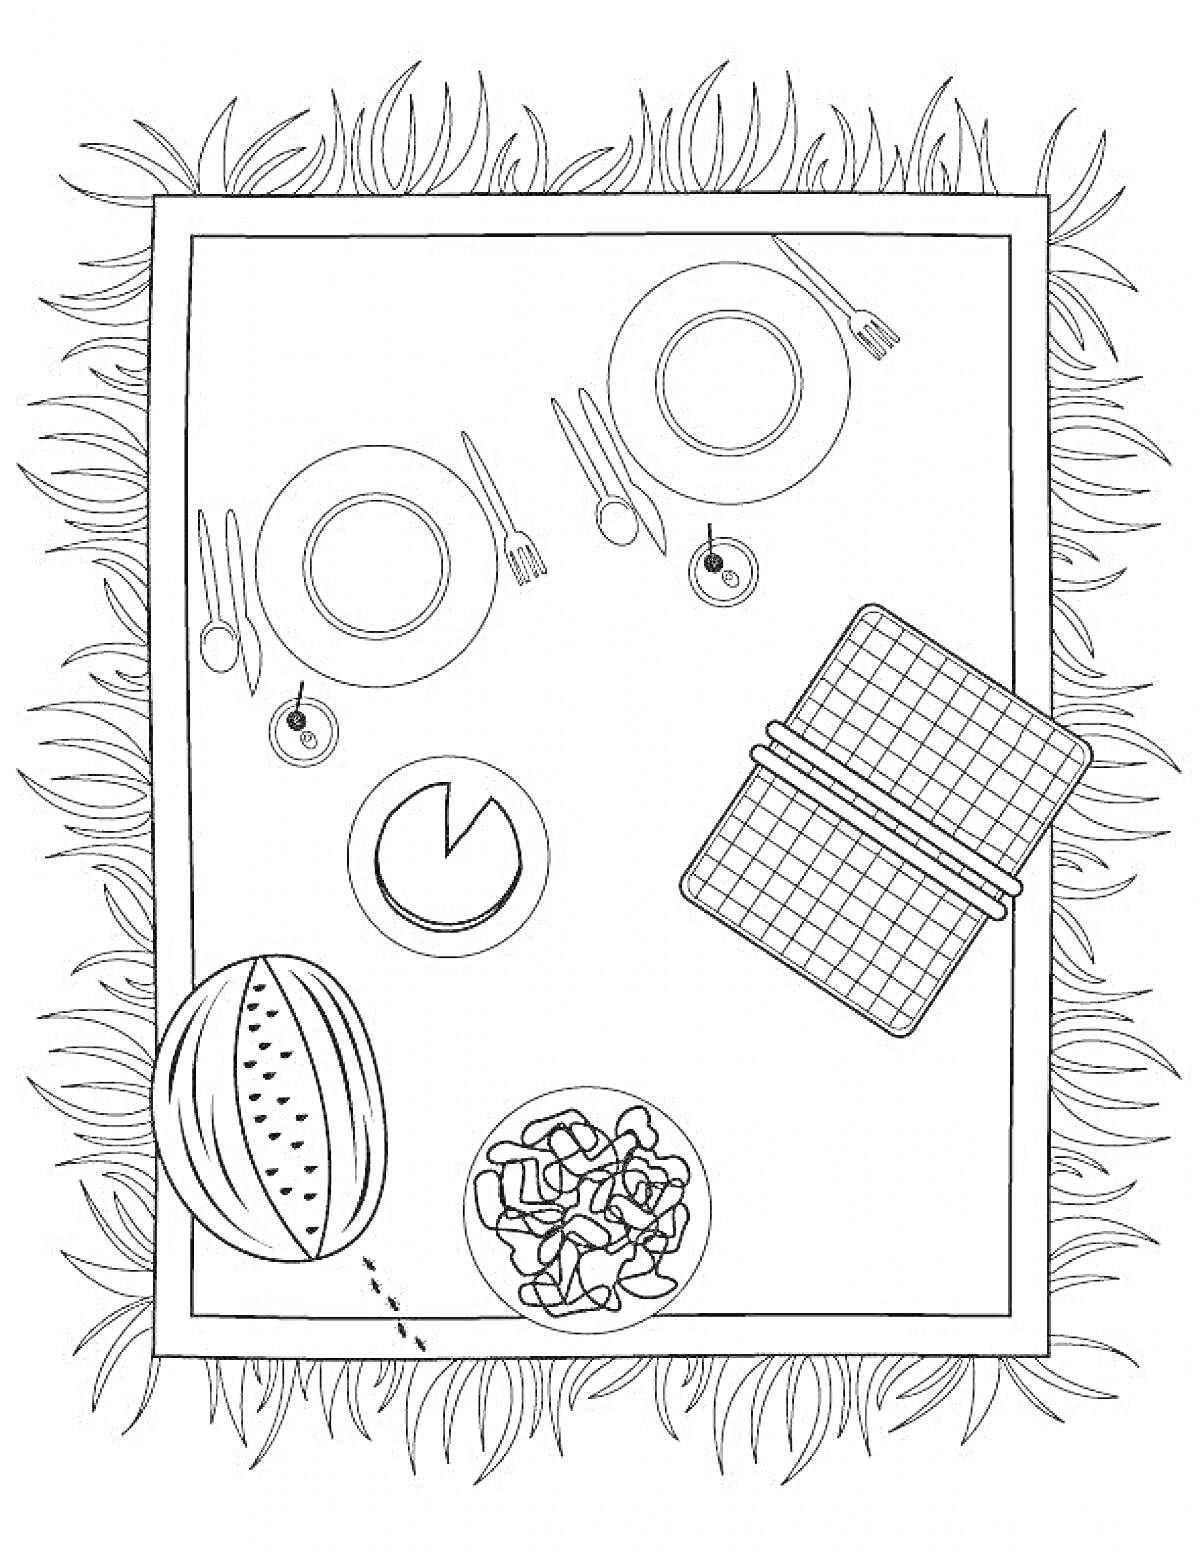 Раскраска Пикник на природе – накрытый стол с посудой и едой, корзина для пикника, кусок арбуза, чаша с чипсами, трава вокруг